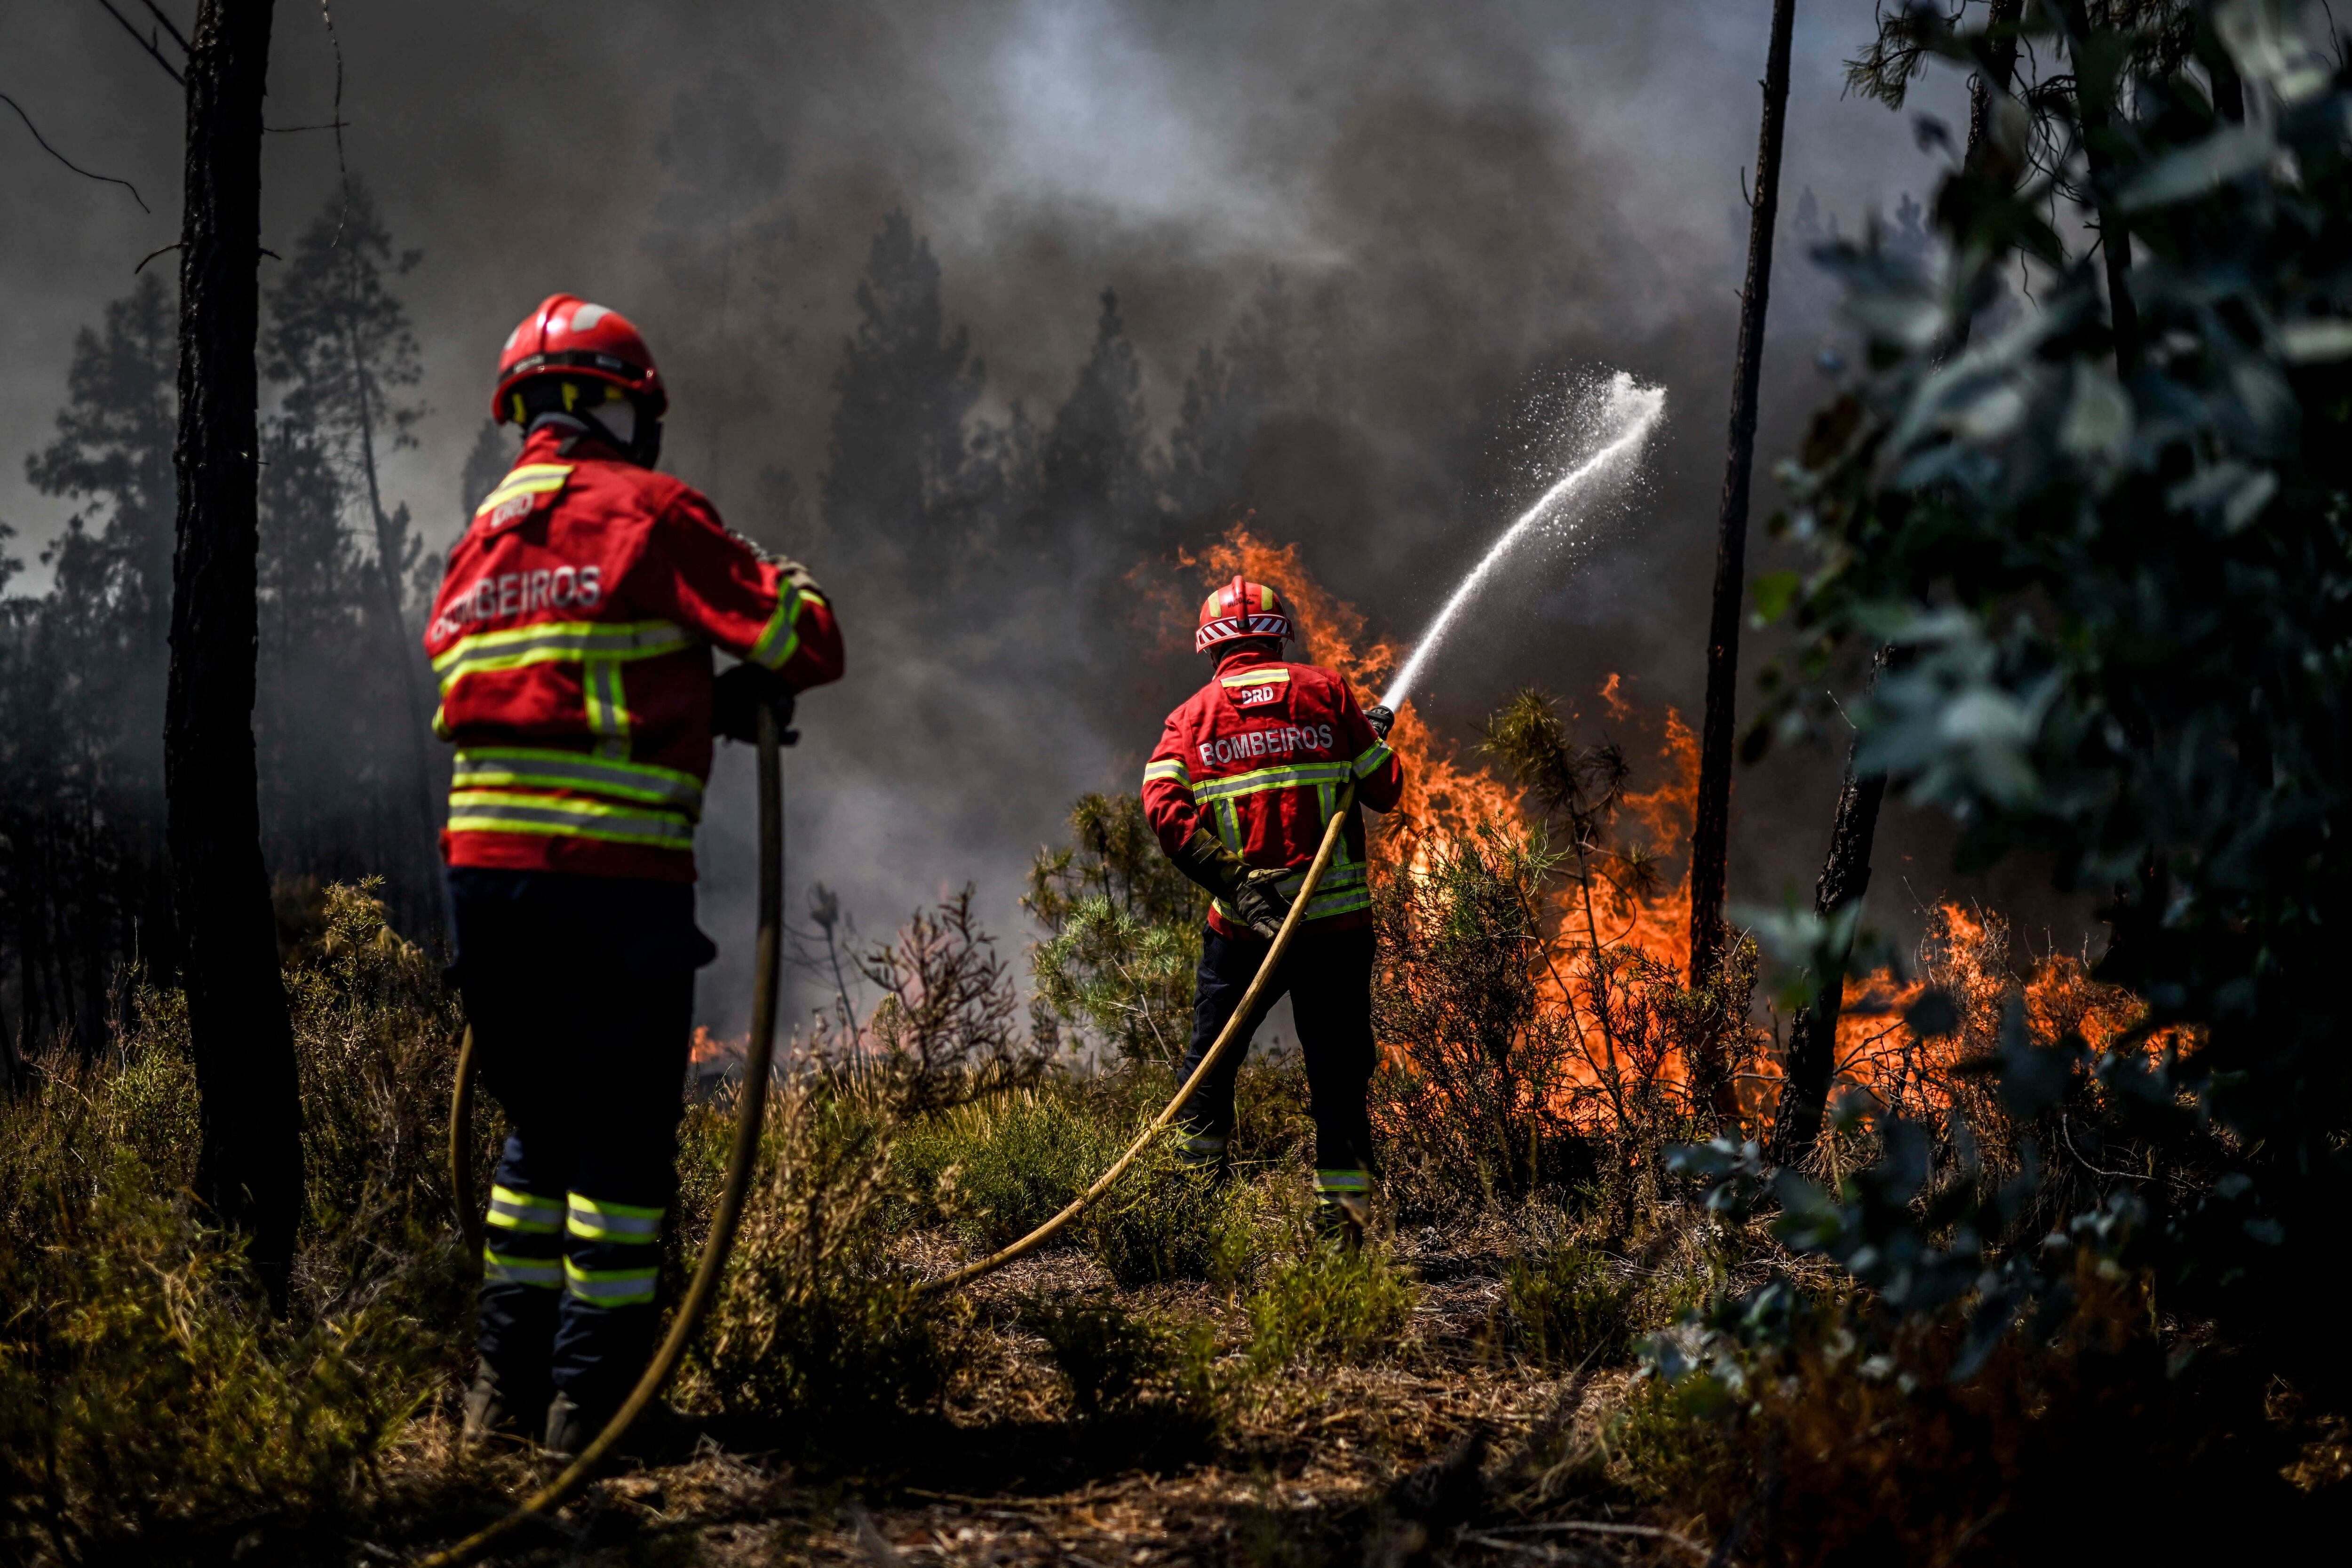 Los incendios forestales han consumido más de 40.000 hectáreas en todo el territorio de Guatemala. Imagen ilustrativa.